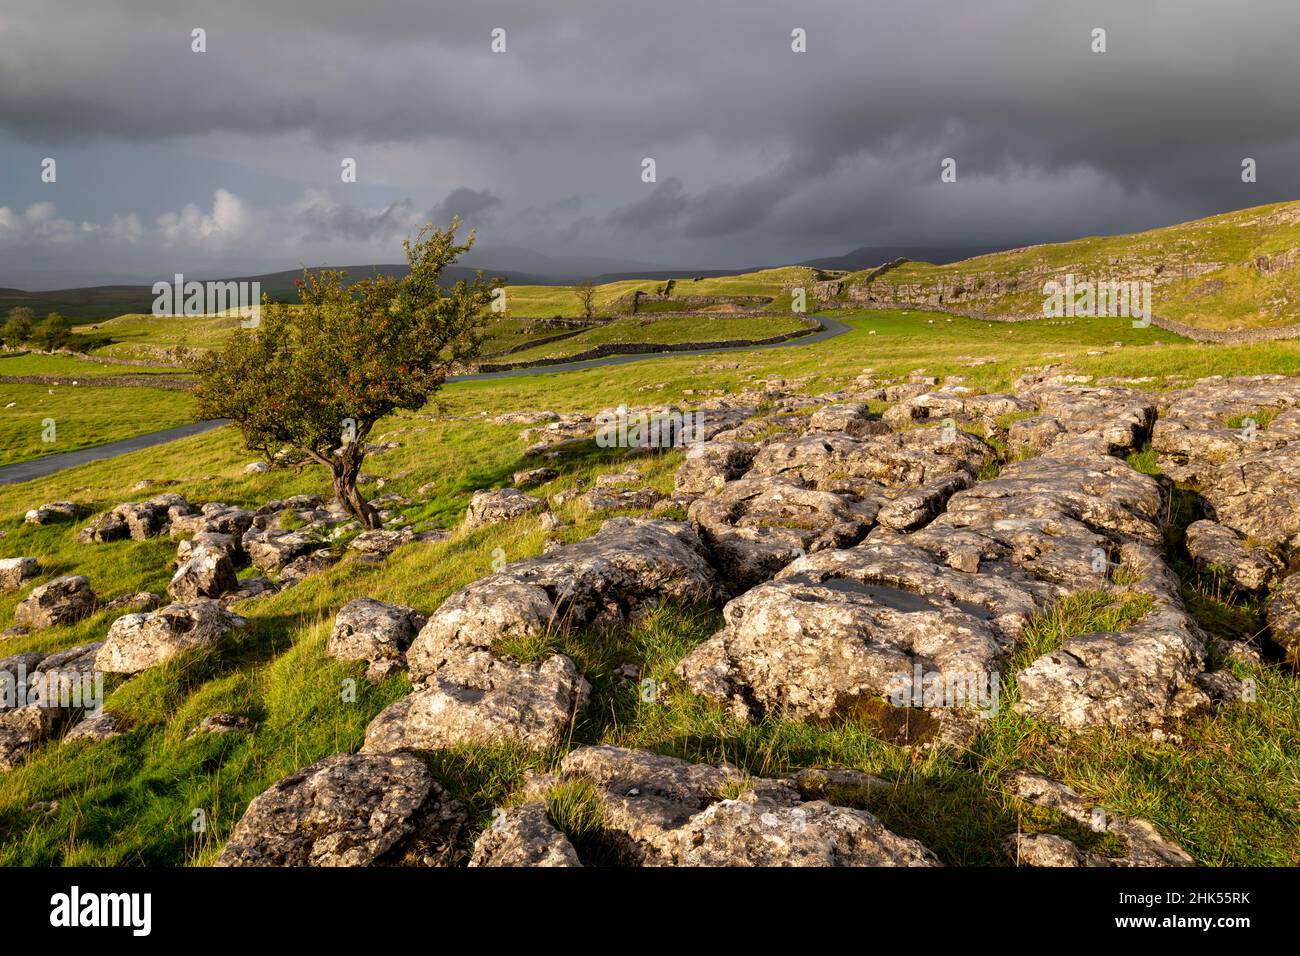 Arbre Hawthorn et pavé calcaire en automne, pierres Winskill, Parc national des Yorkshire Dales, Yorkshire, Angleterre, Royaume-Uni, Europe Banque D'Images